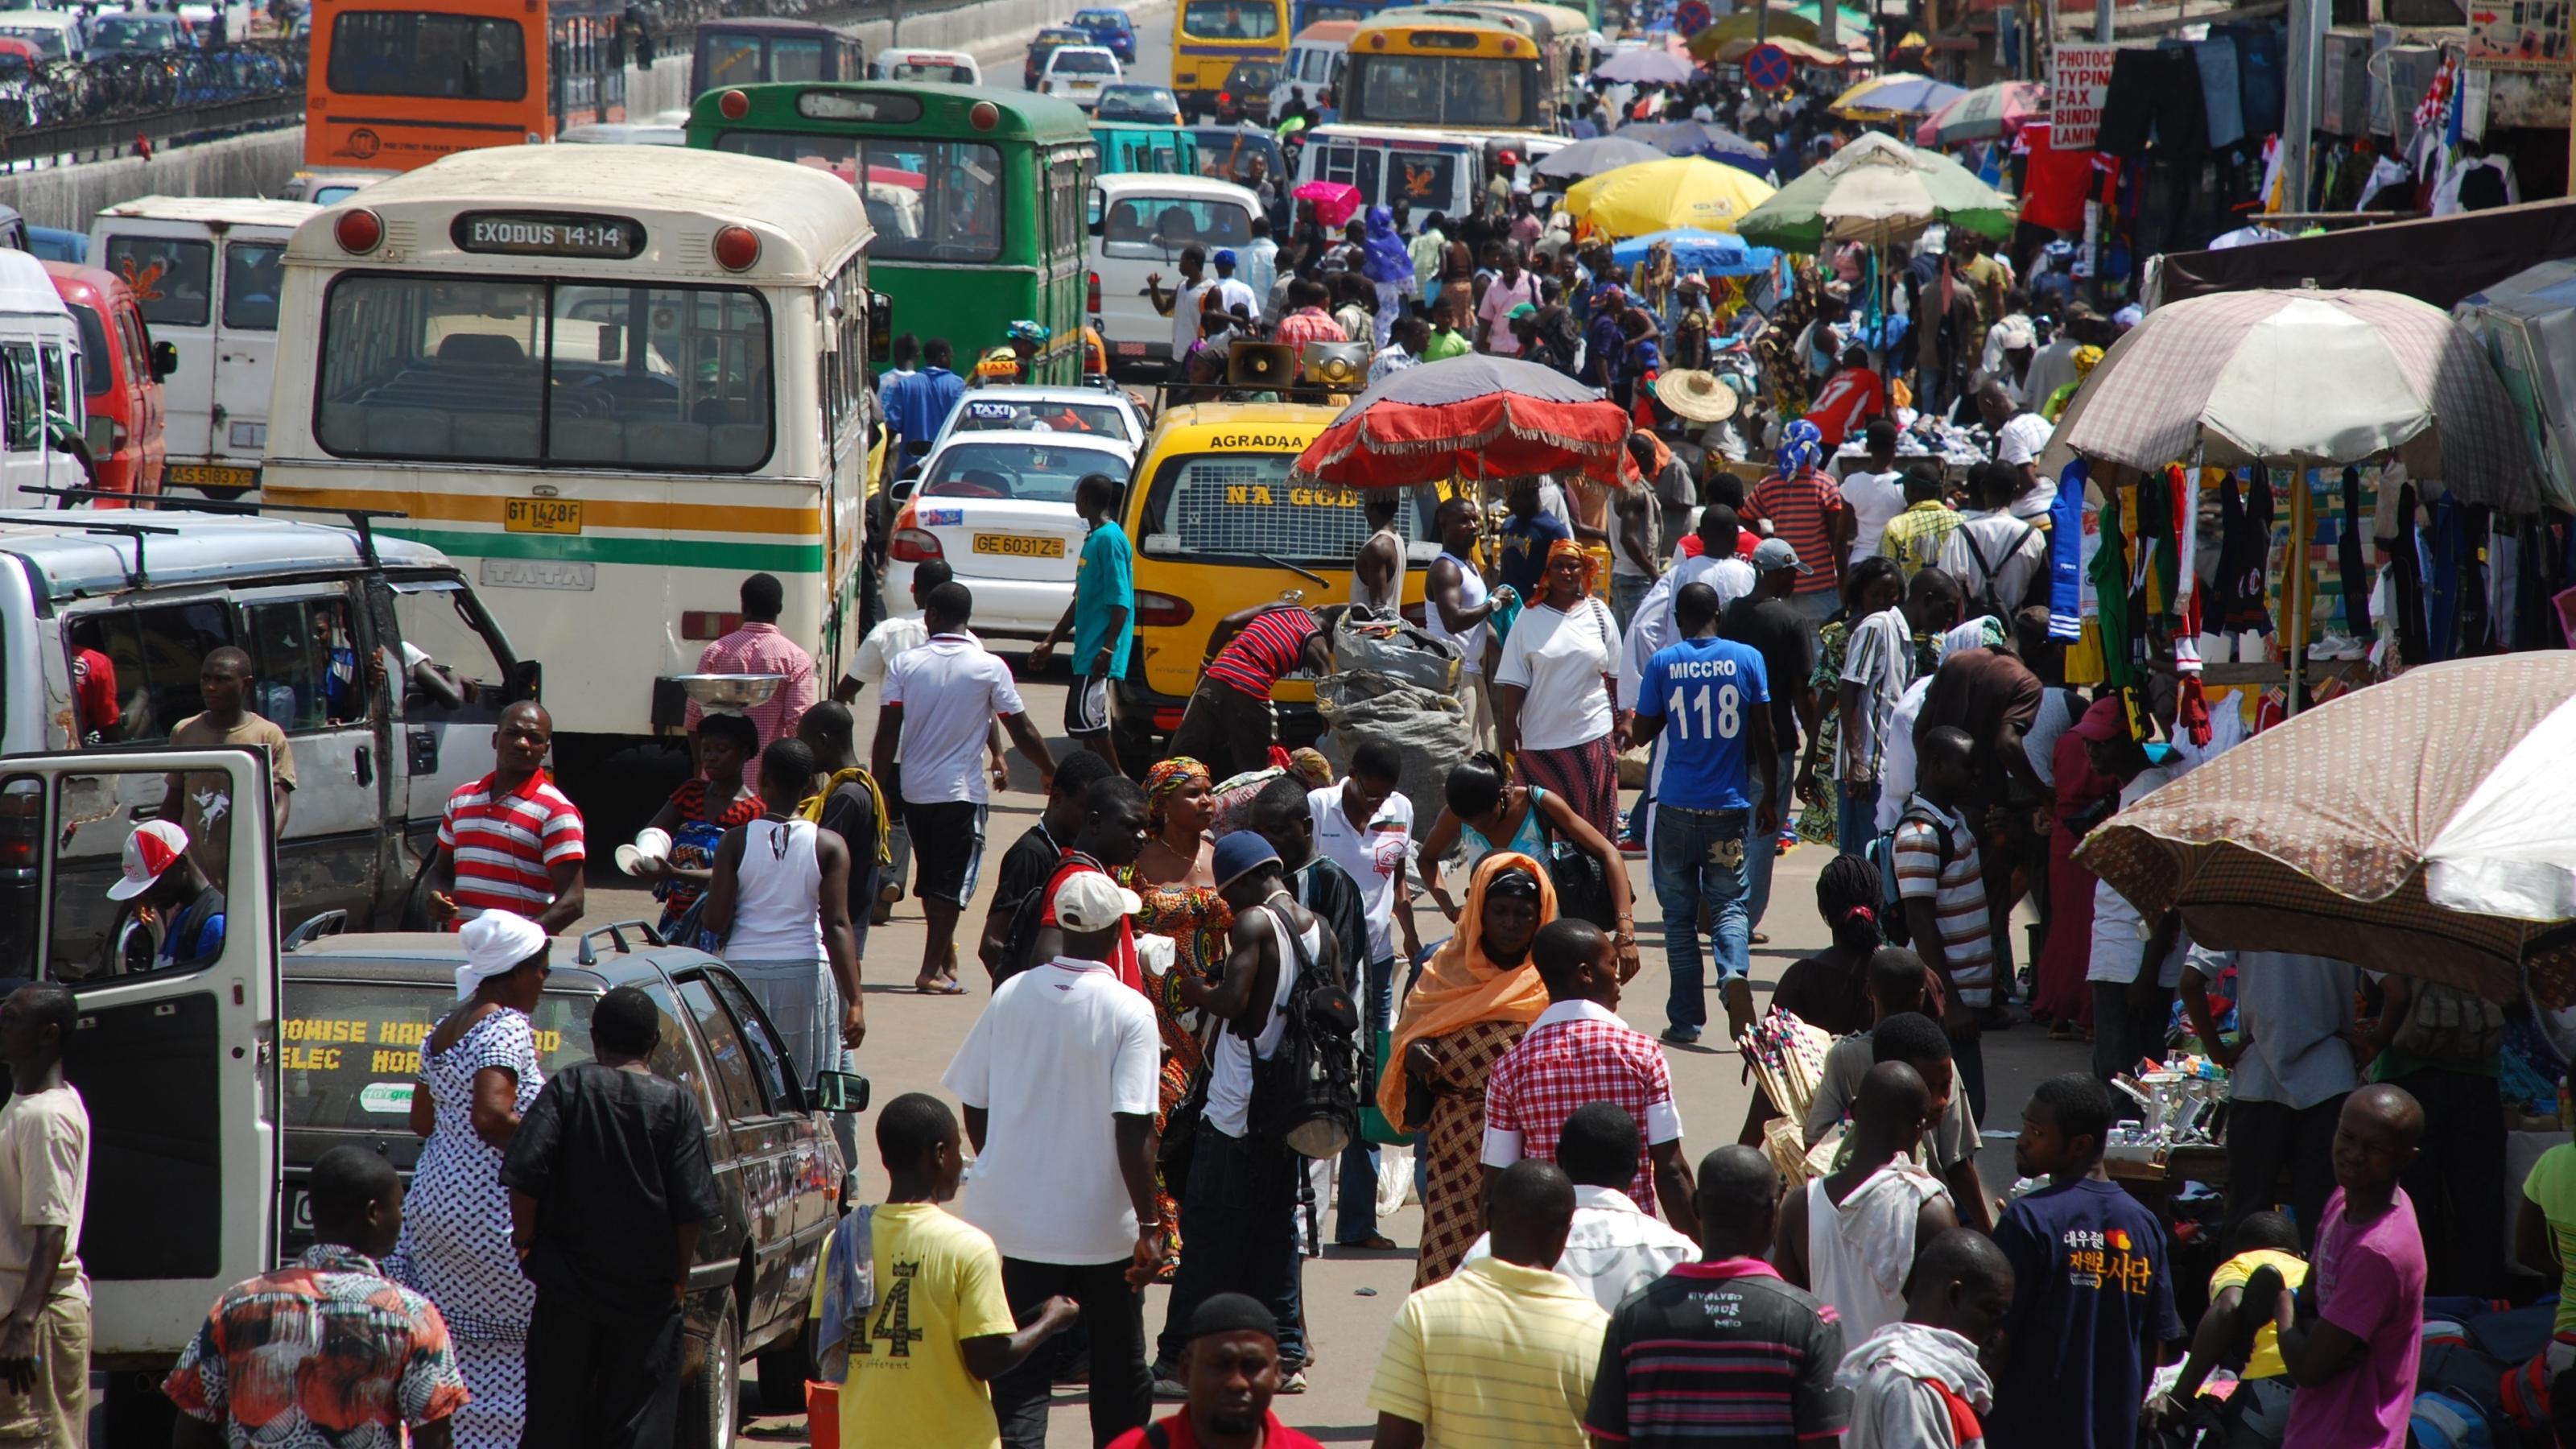 Eine Straße in Ghana. Es sind viele Menschen, Busse und Autos zu sehen.